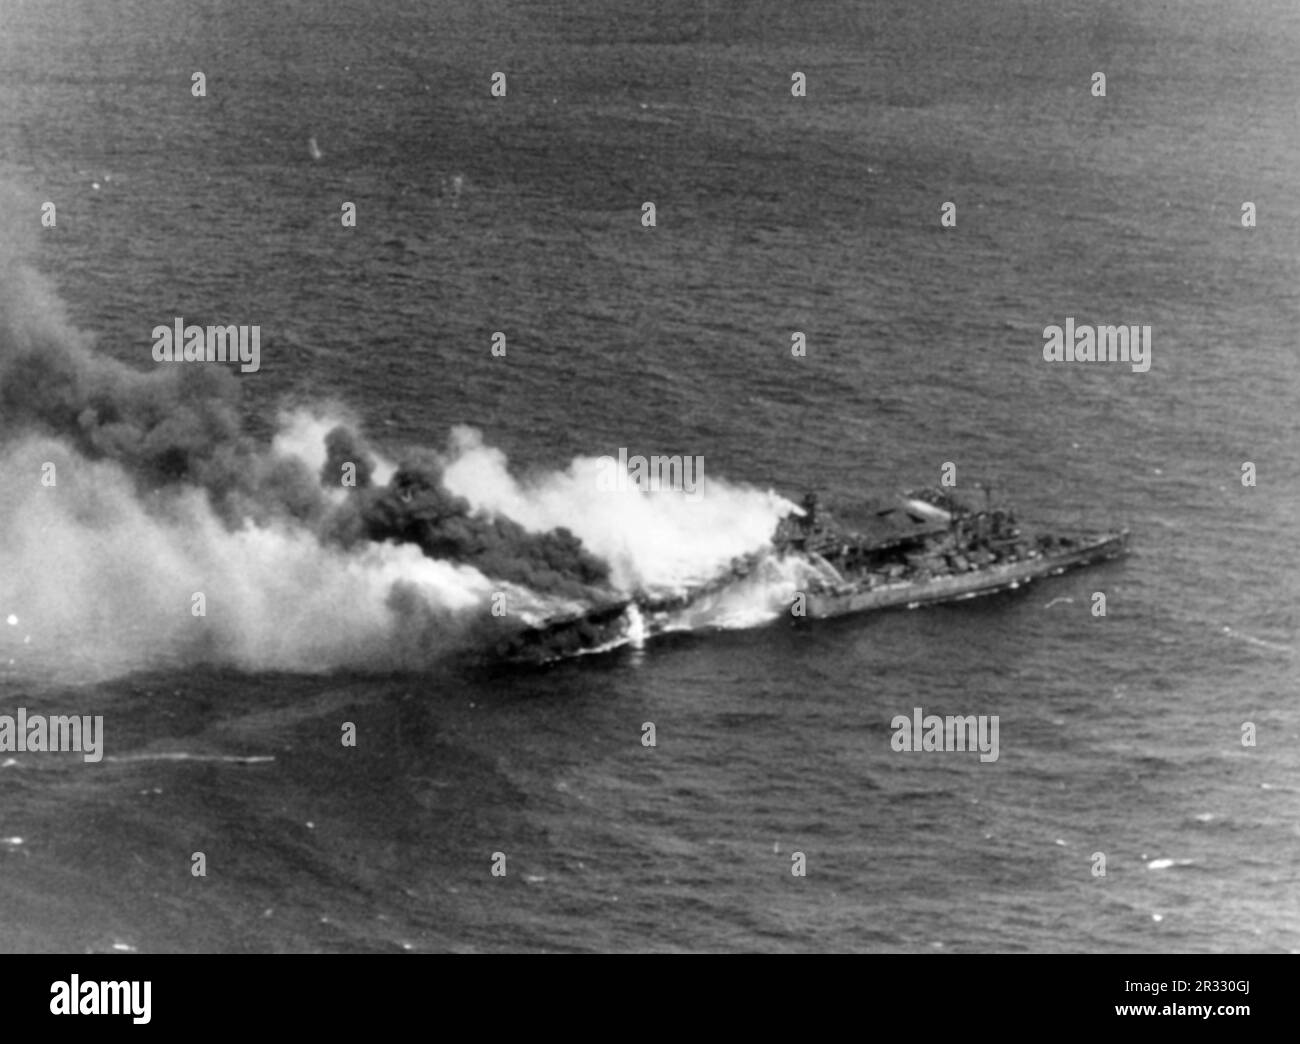 Le porte-avions américain USS Franklin (CV-13) photographié en train de brûler dans les eaux au large du Japon après avoir été frappé lors d'une attaque aérienne le 19 mars 1945. Le croiseur léger USS Santa Fe (CL-60) est à côté. La photo a été prise par des avions de l'USS Essex (CV-9) revenant d'une grève sur Kobe, Japon. Lorsque le Japon était confronté à la défaite de fin 1944, il a choisi de détruire des navires américains par des attentats-suicides, connus sous le nom de Kamikaze.ces attaques étaient une arme physique et psychologique puissante et ont coulé un total de 47 navires pour un coût de plus de 3000 pilotes et avions. À la fin de 1944, la marine américaine était assez grande que les pertes Banque D'Images